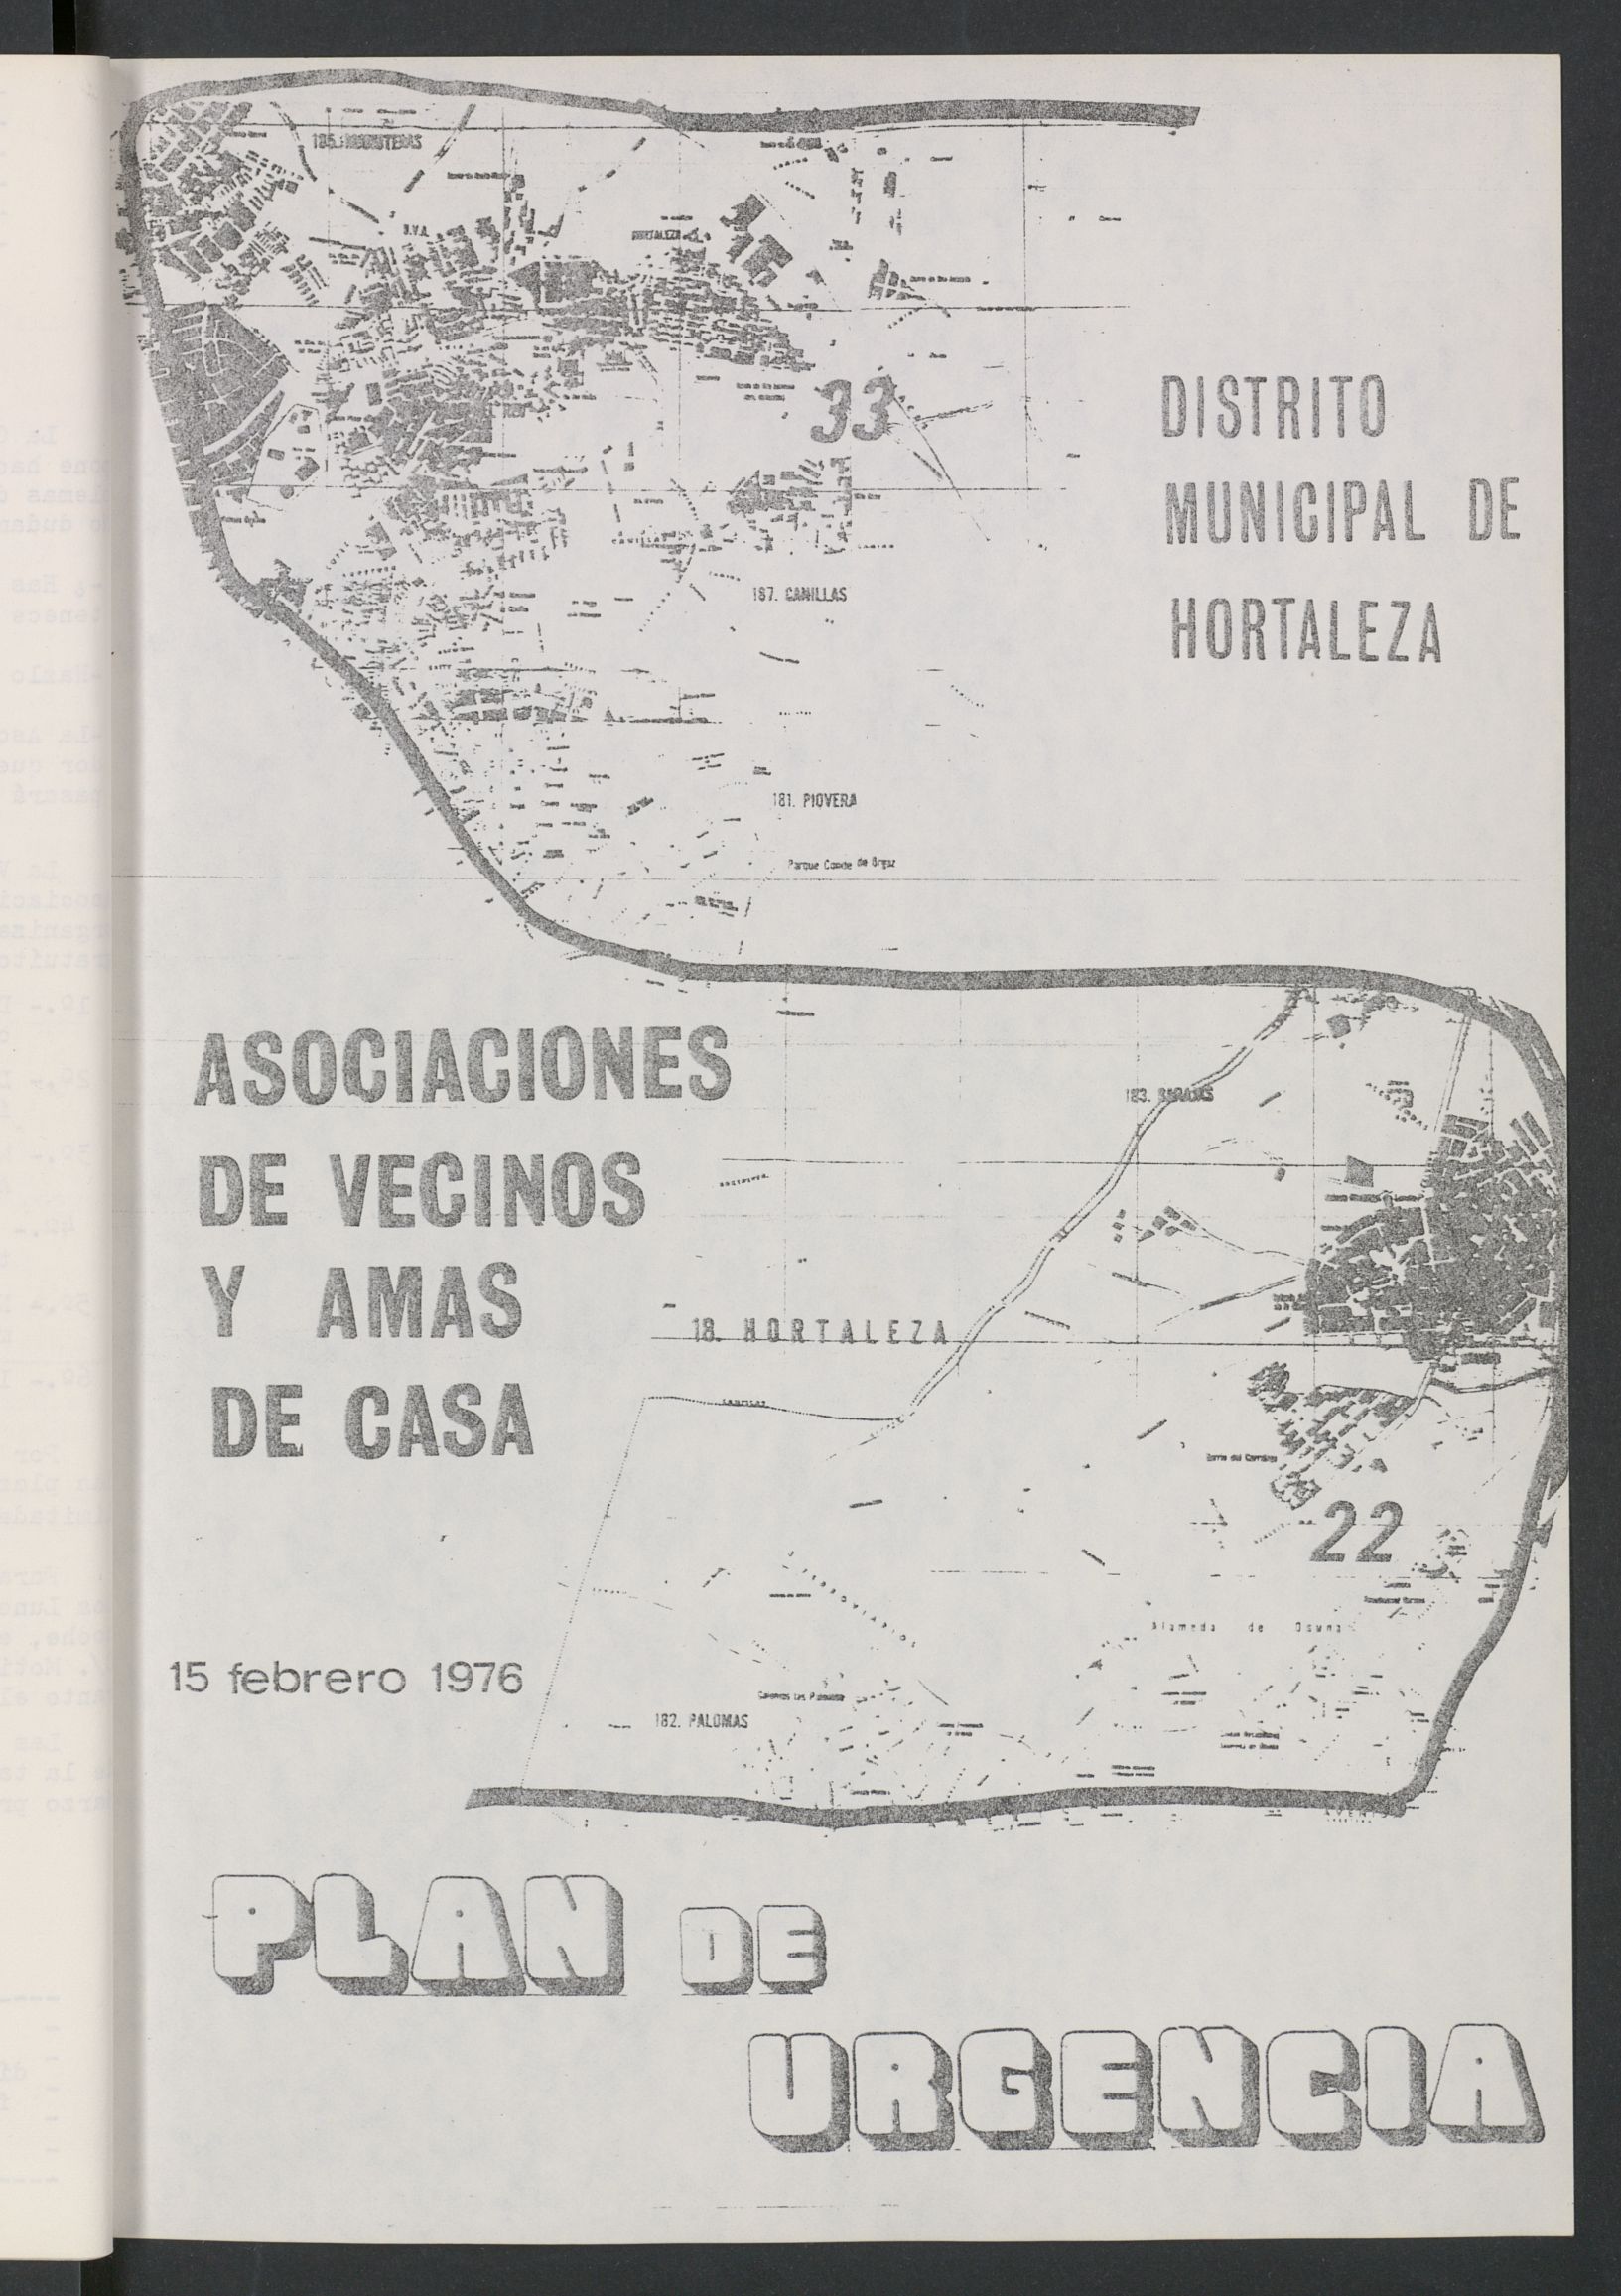 Plan de Urgencia : Distrito Municipal de Hortaleza (1976, 15 de febrero)